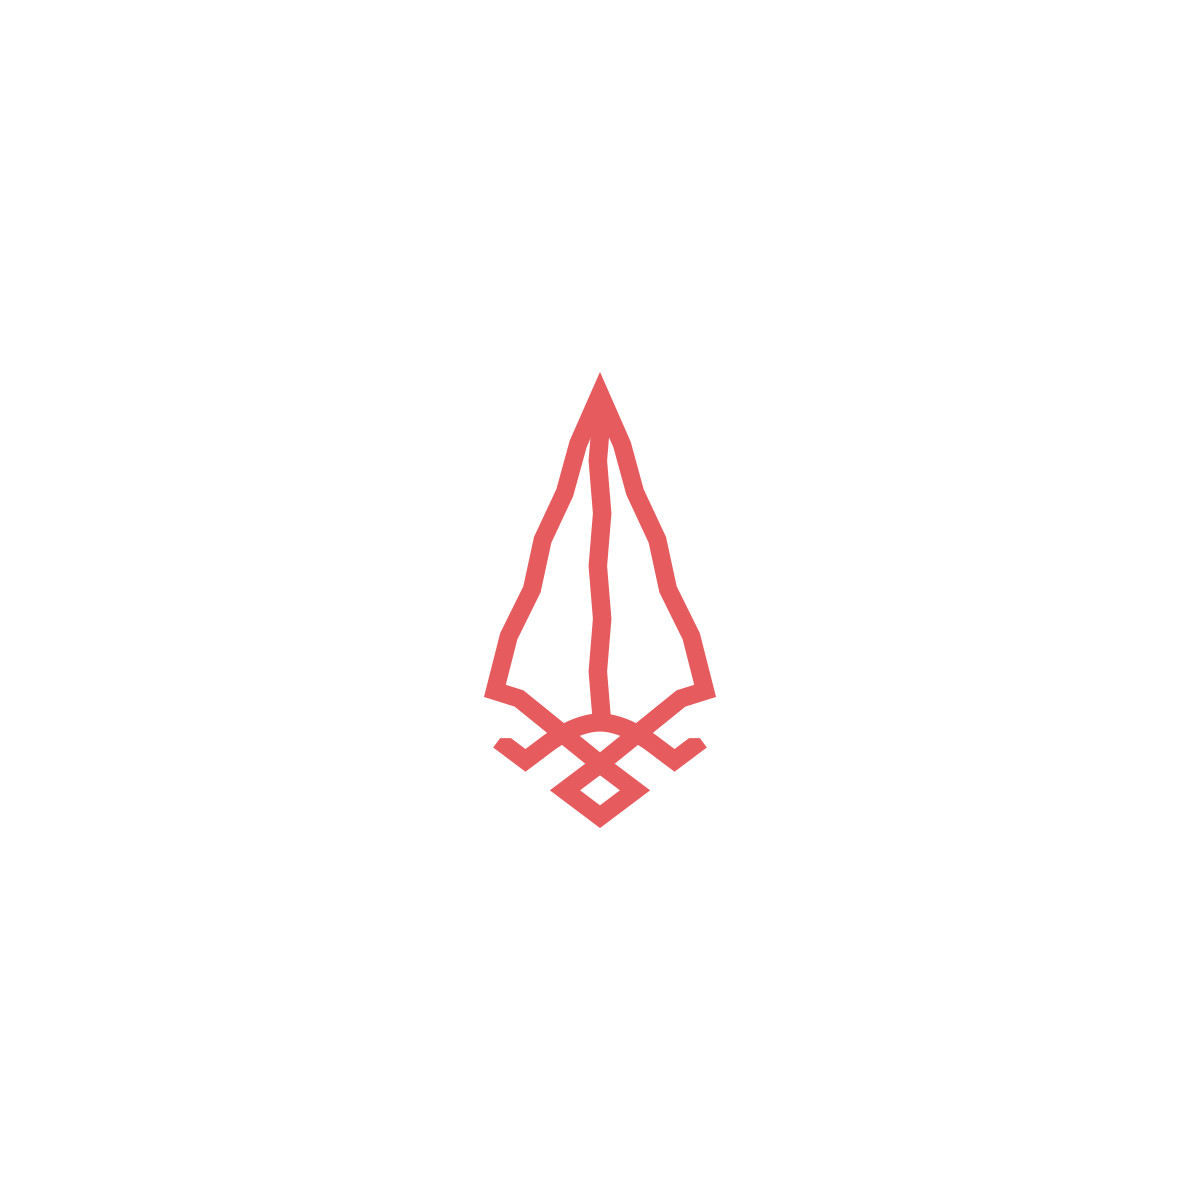 Adobe Portfolio logo brand branding  ILLUSTRATION  typography  